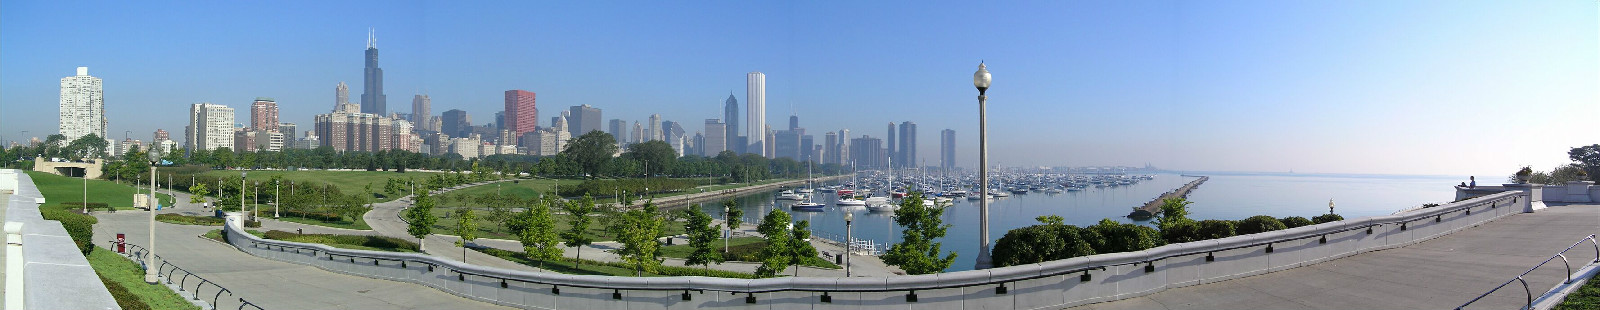 芝加哥市全景圖